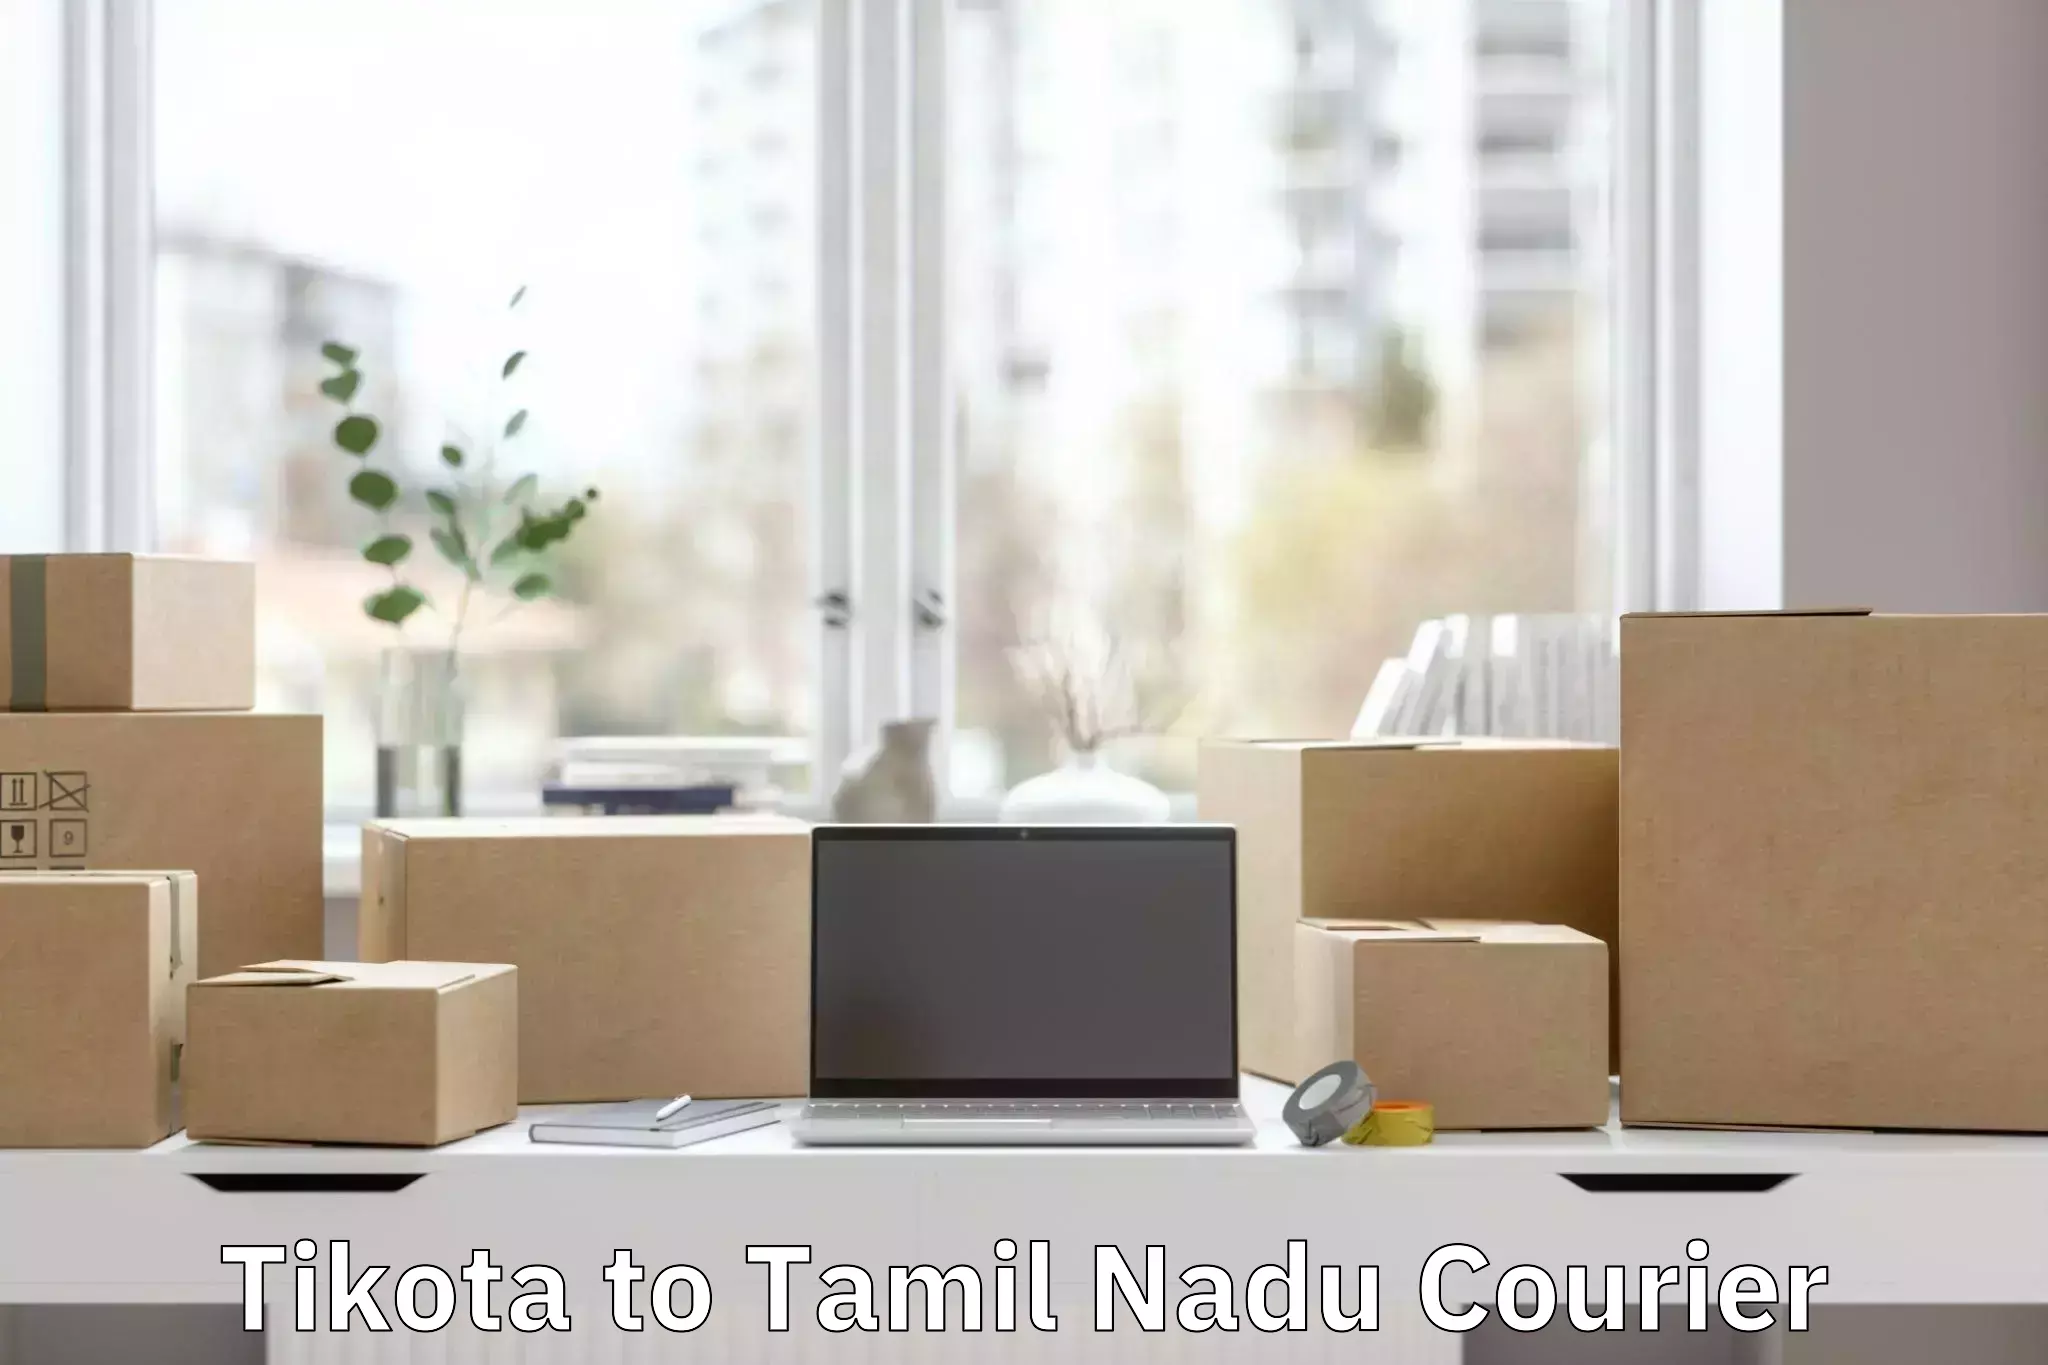 Baggage delivery estimate Tikota to Tamil Nadu